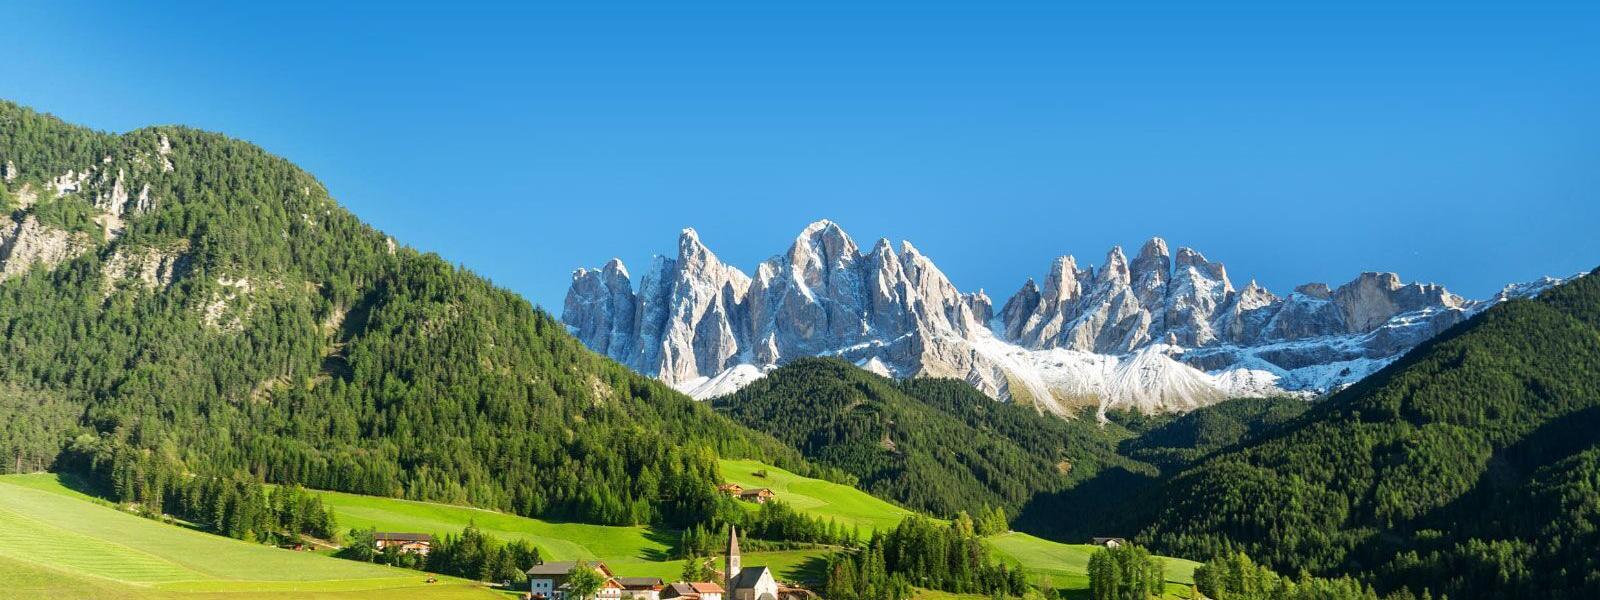 Ferienhäuser und Ferienwohnungen in Südtirol - e-domizil